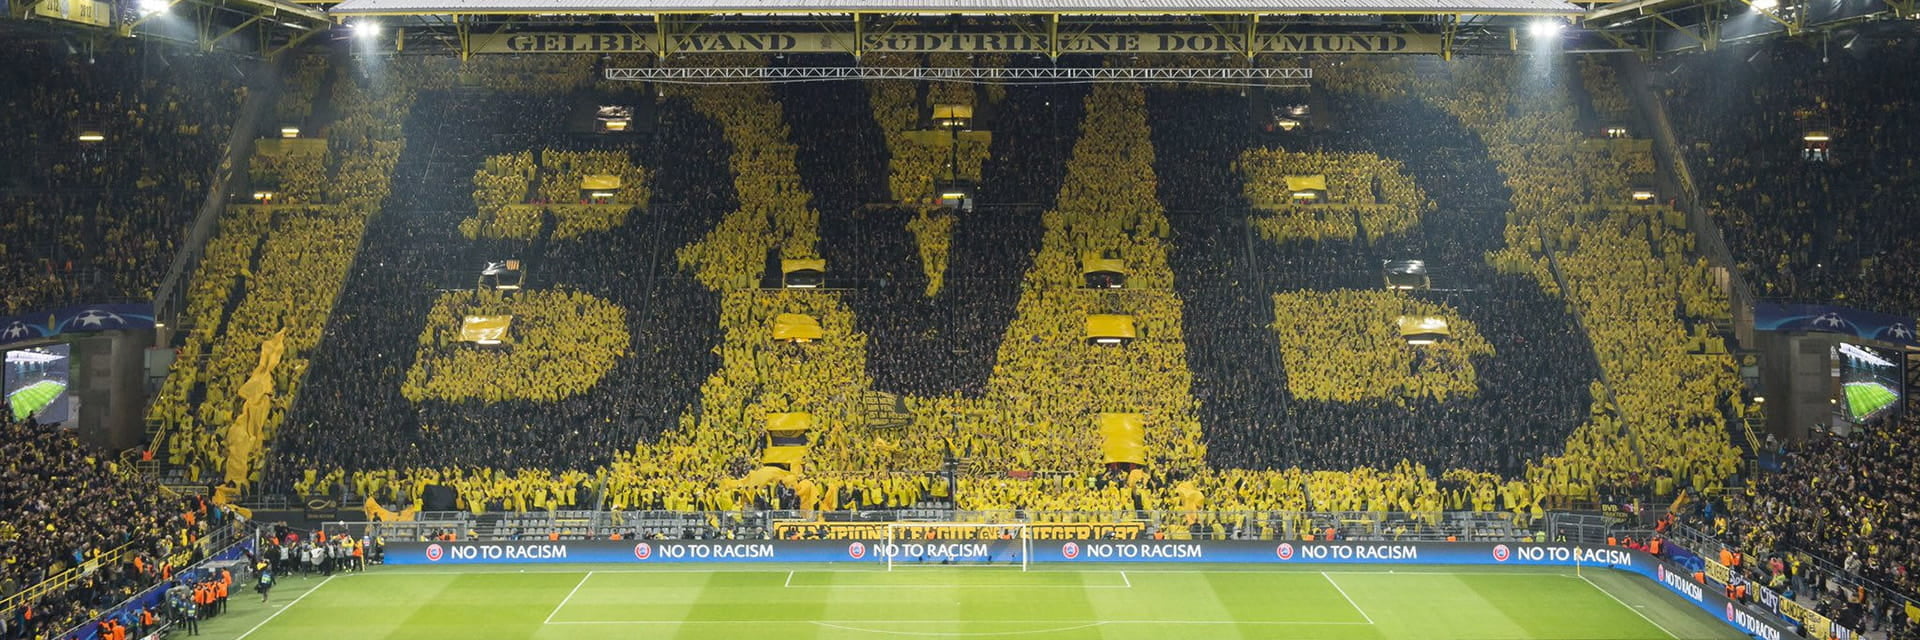 Borussia Dortmund - VfB Stuttgart, 6 octubreen 15:30